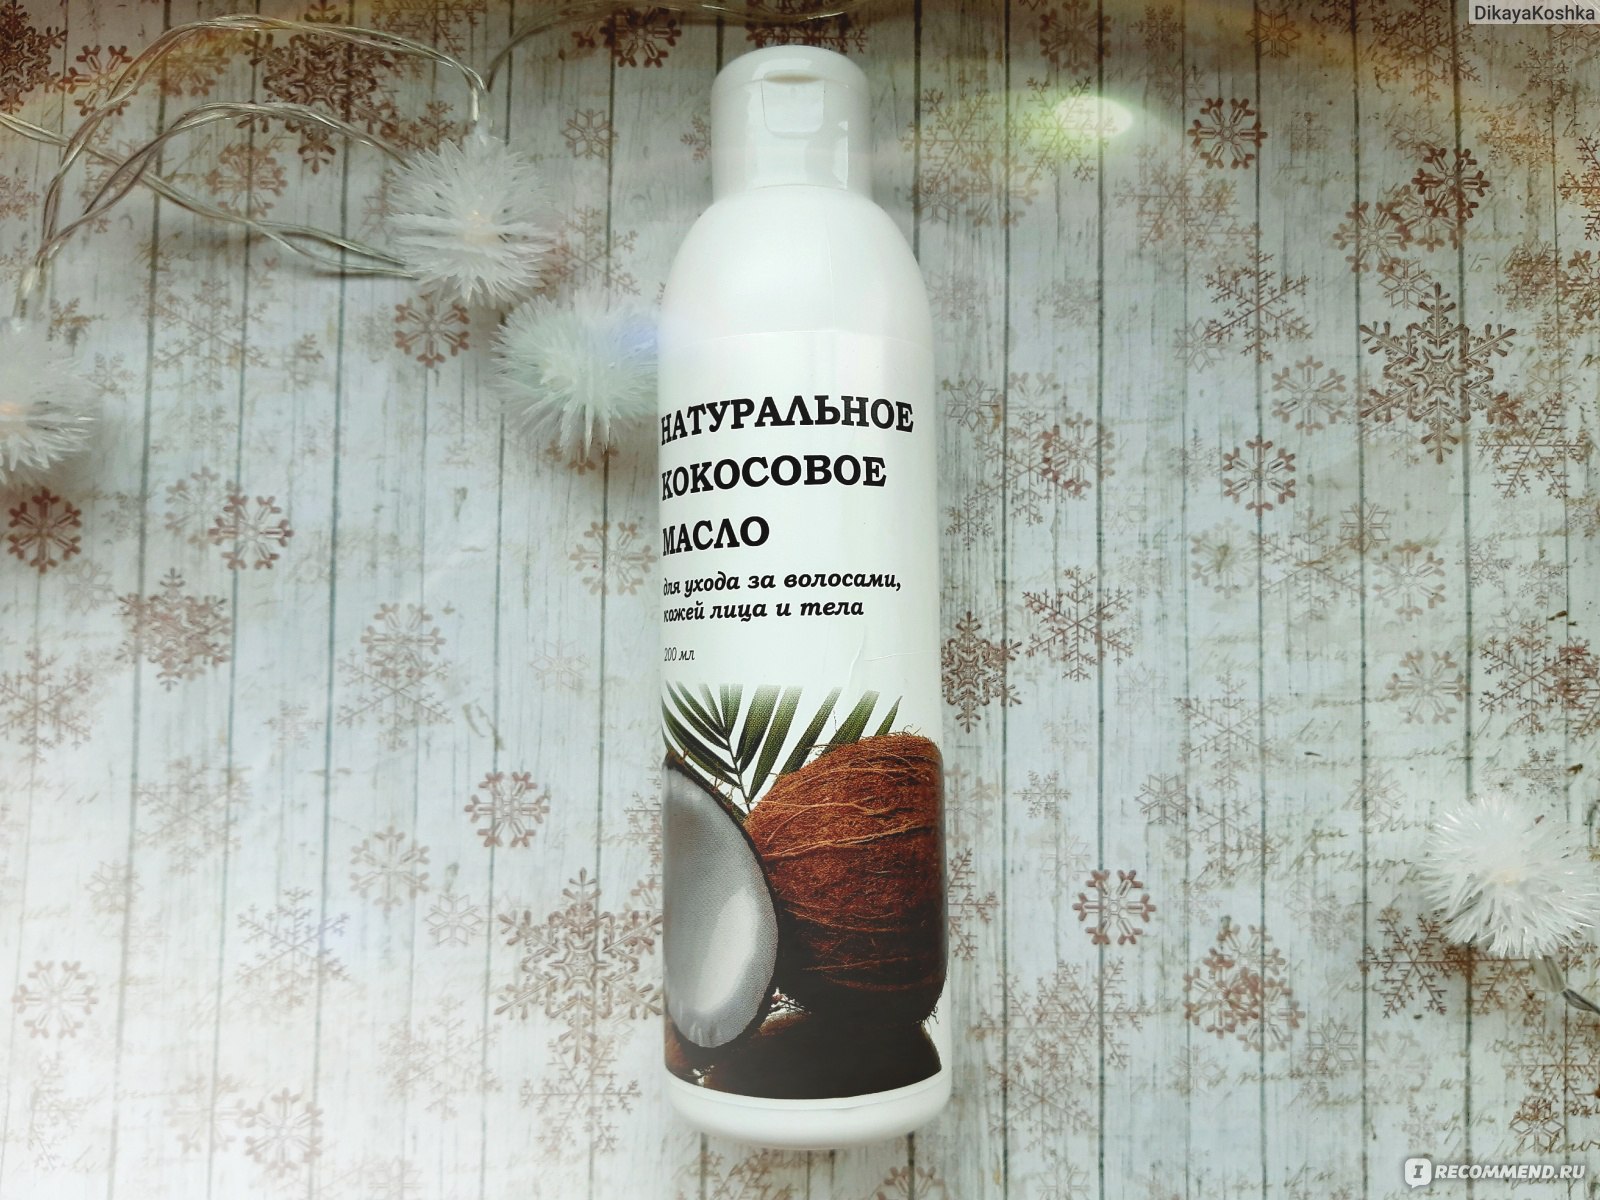 Натуральное кокосовое масло для ухода за волосами кожей лица и тела